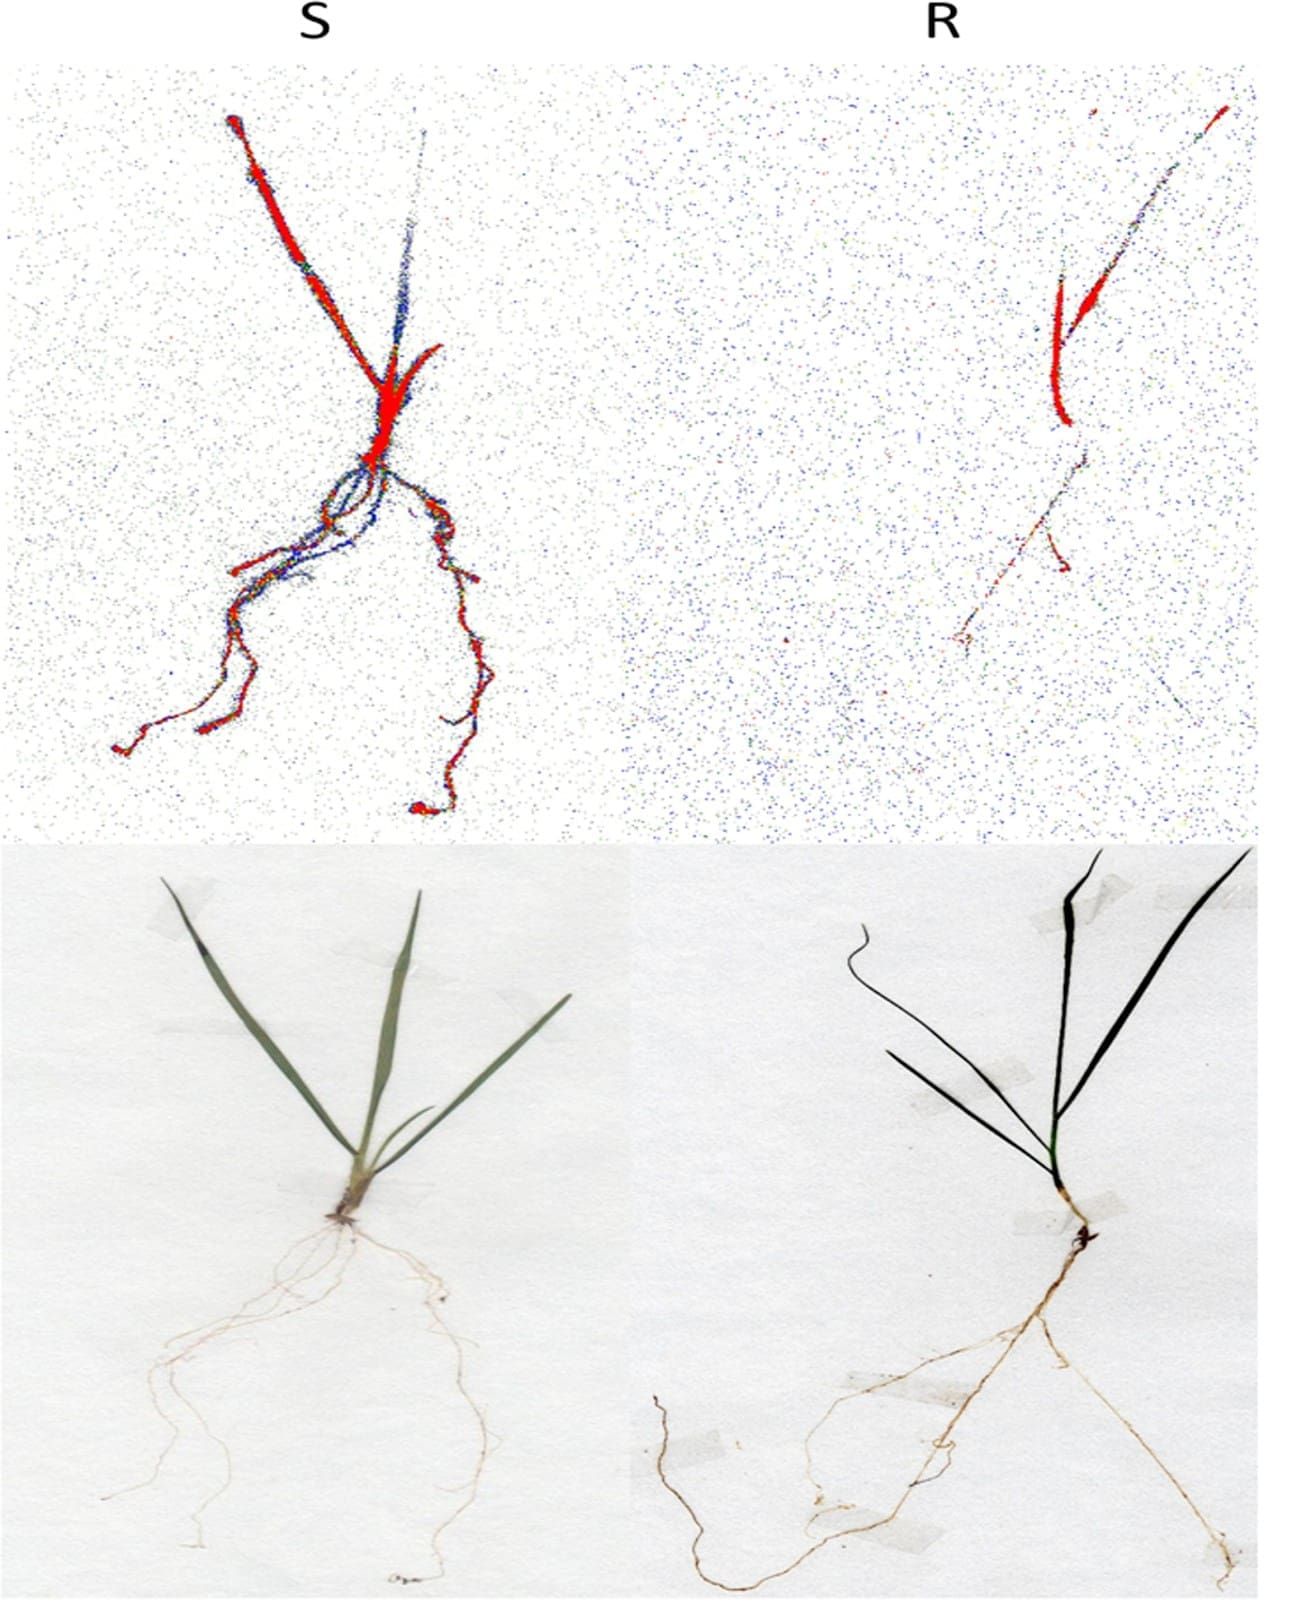 Translocação diferencial de herbicida de biótipos de azevém resistente (R) e suscetível (S) a glifosato - resistência de plantas daninhas a herbicidas